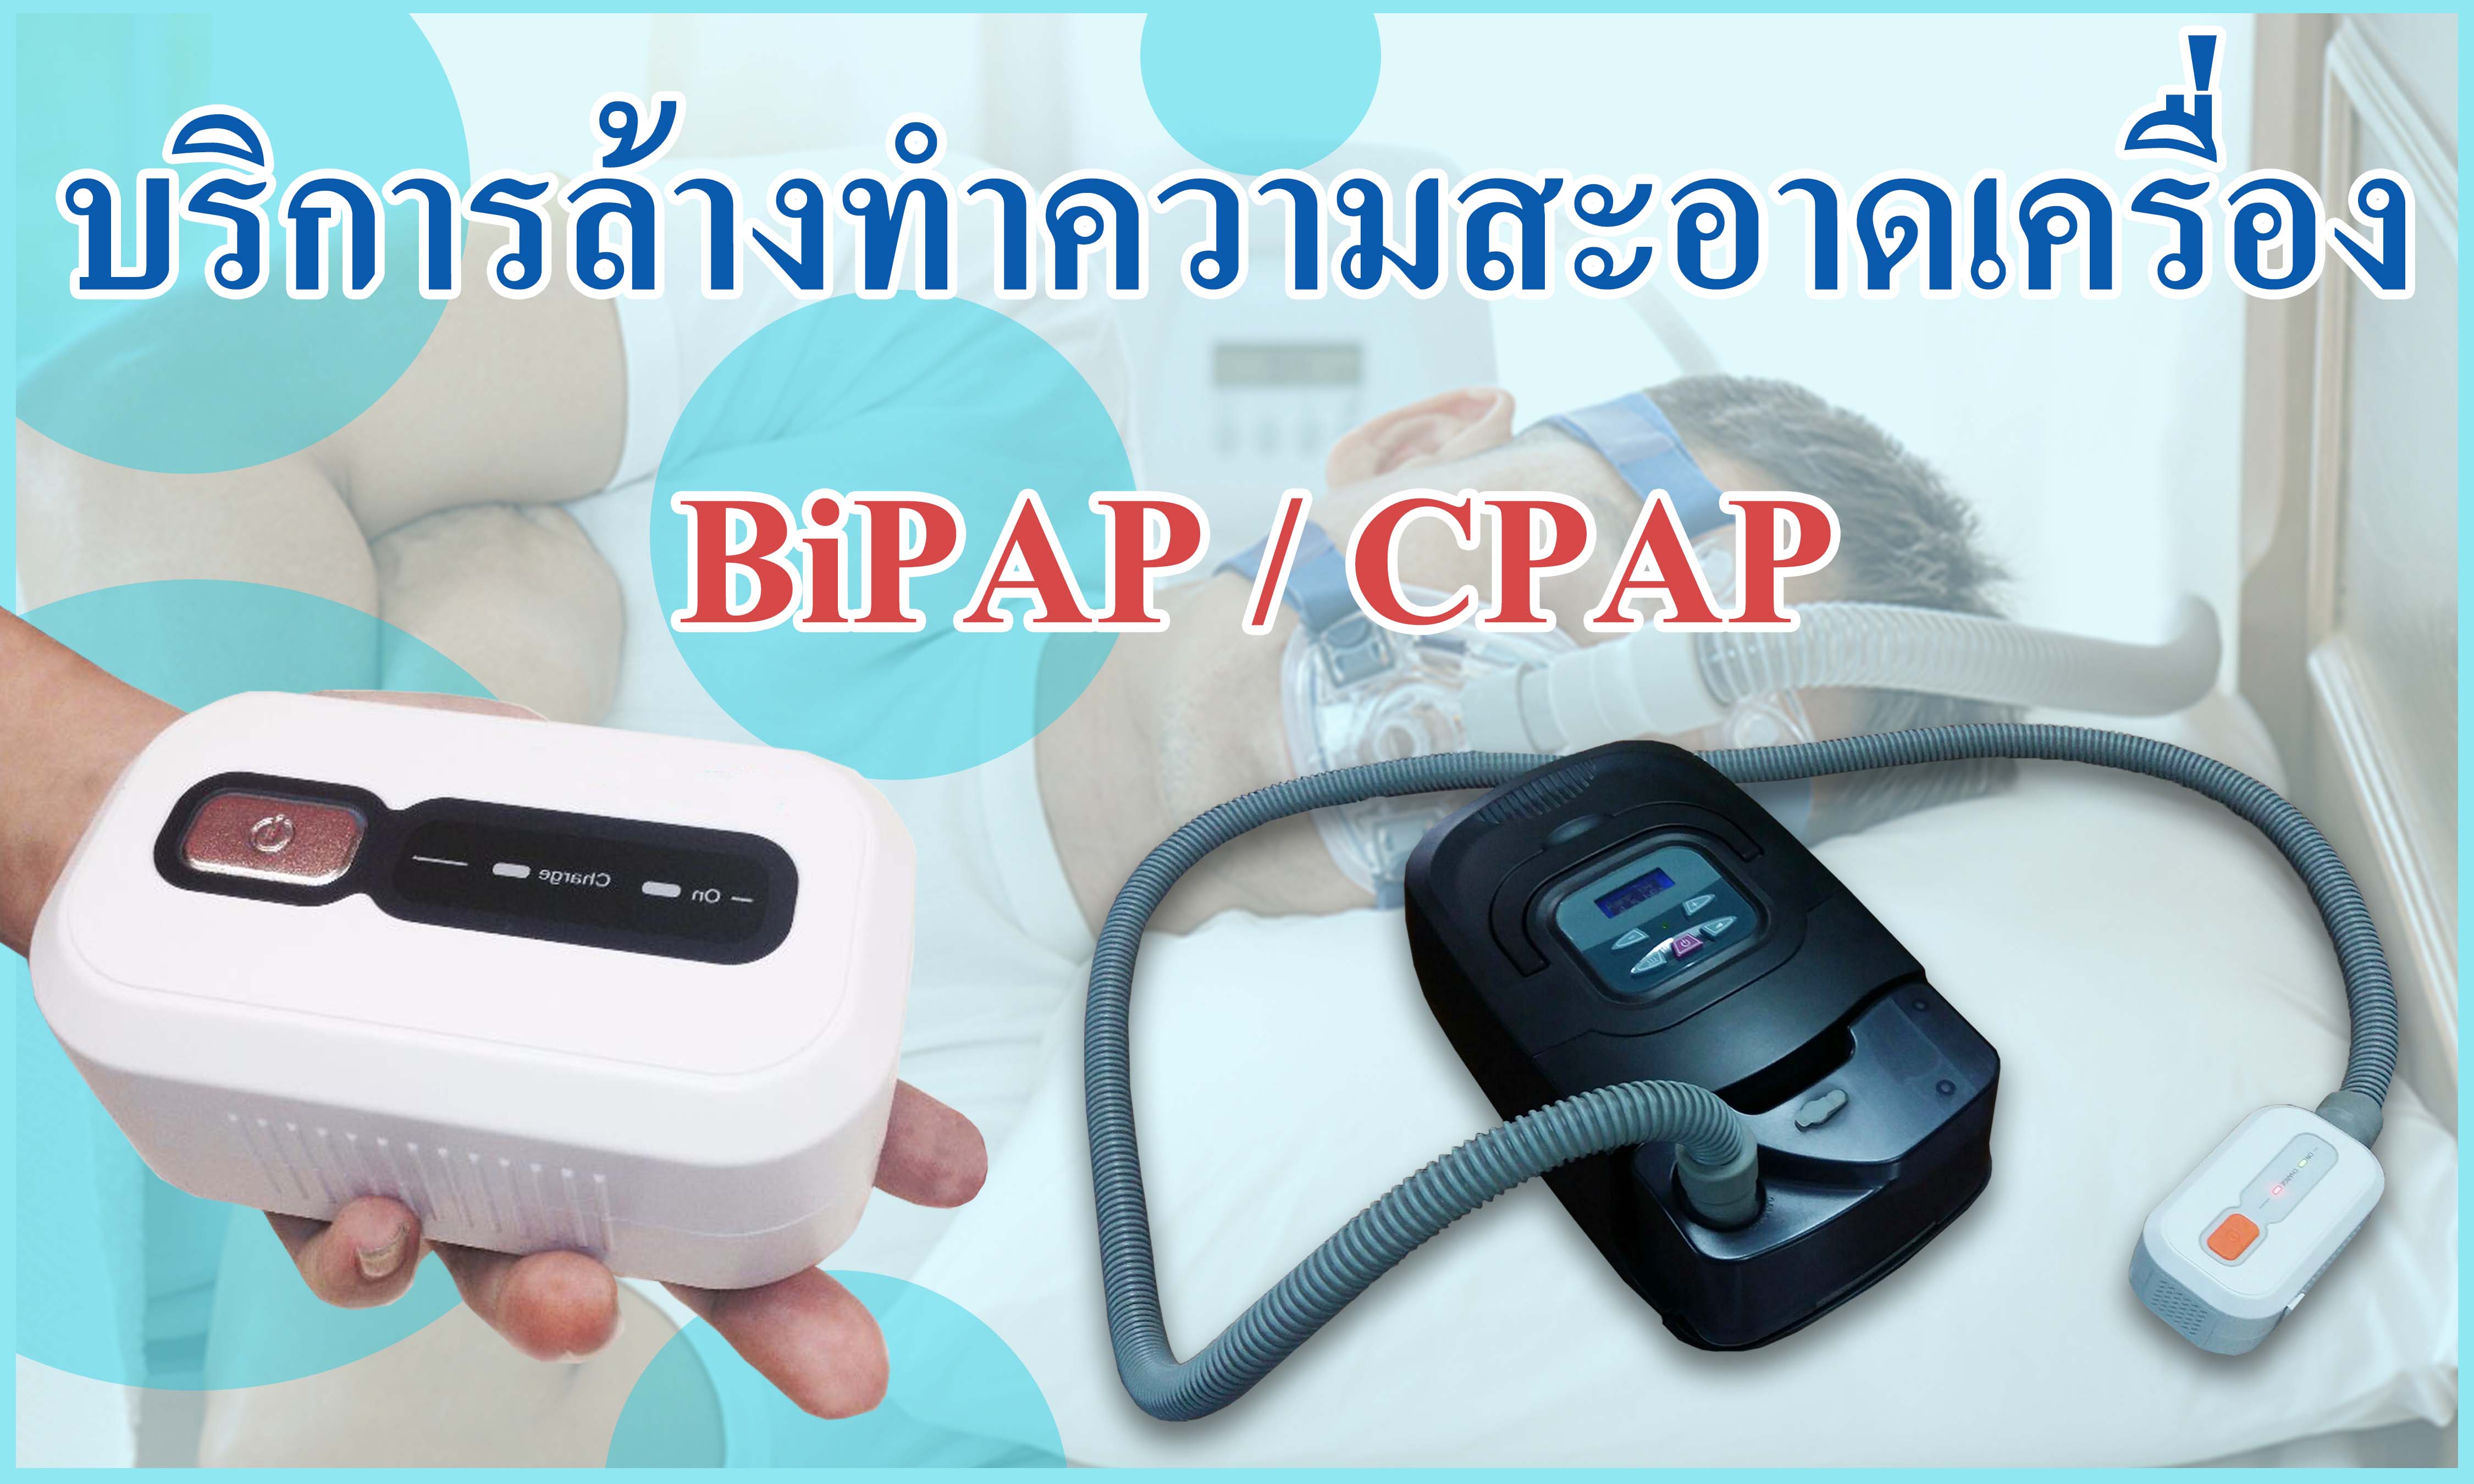 บริการล้างเครื่อง BiPAP / CPAP ทำความสะอาดเครื่อง BiPAP / CPAP ล้วเครื่อง BiPAP / CPAP